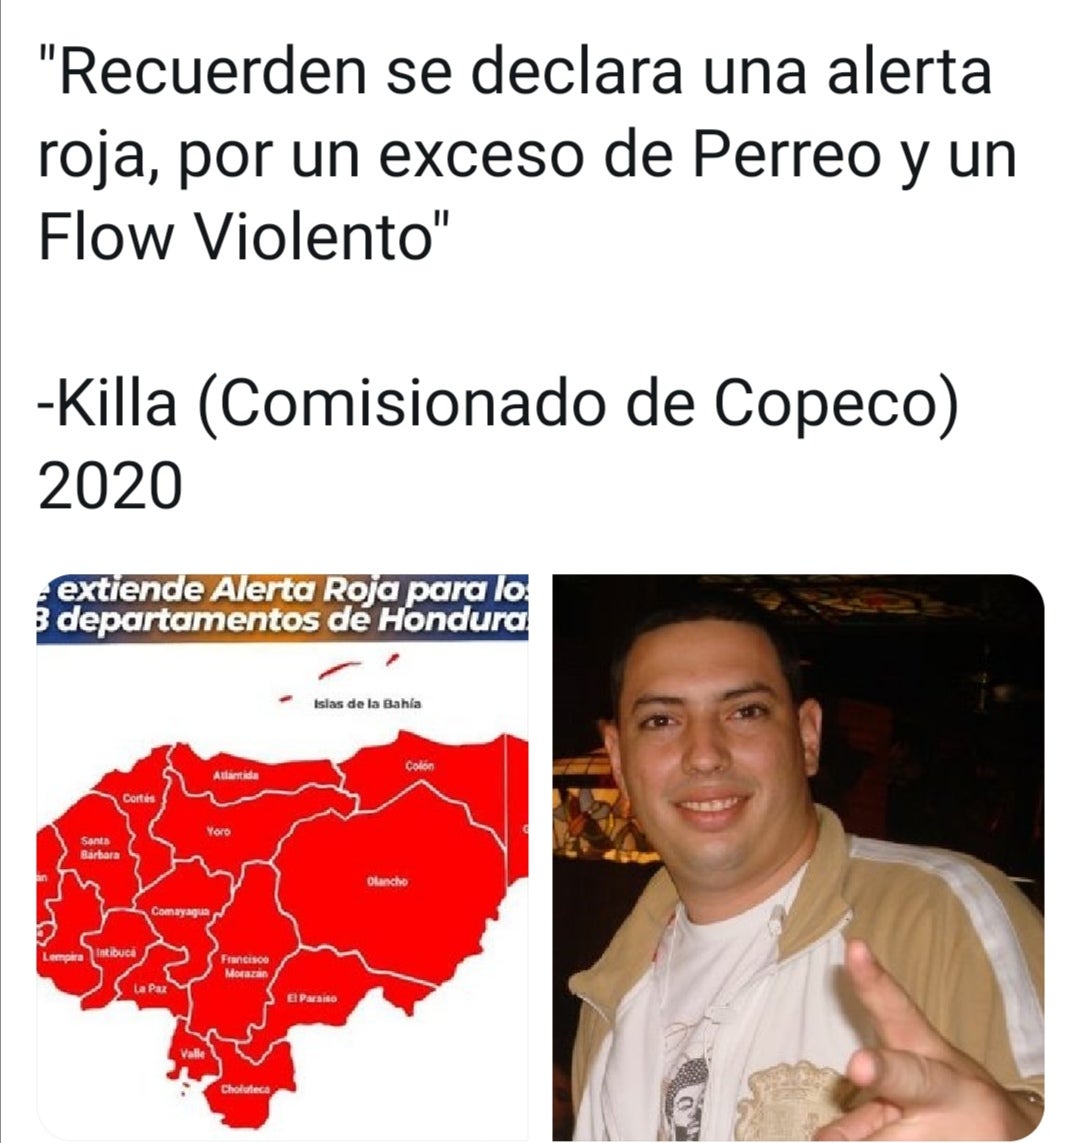 COPECO Killa